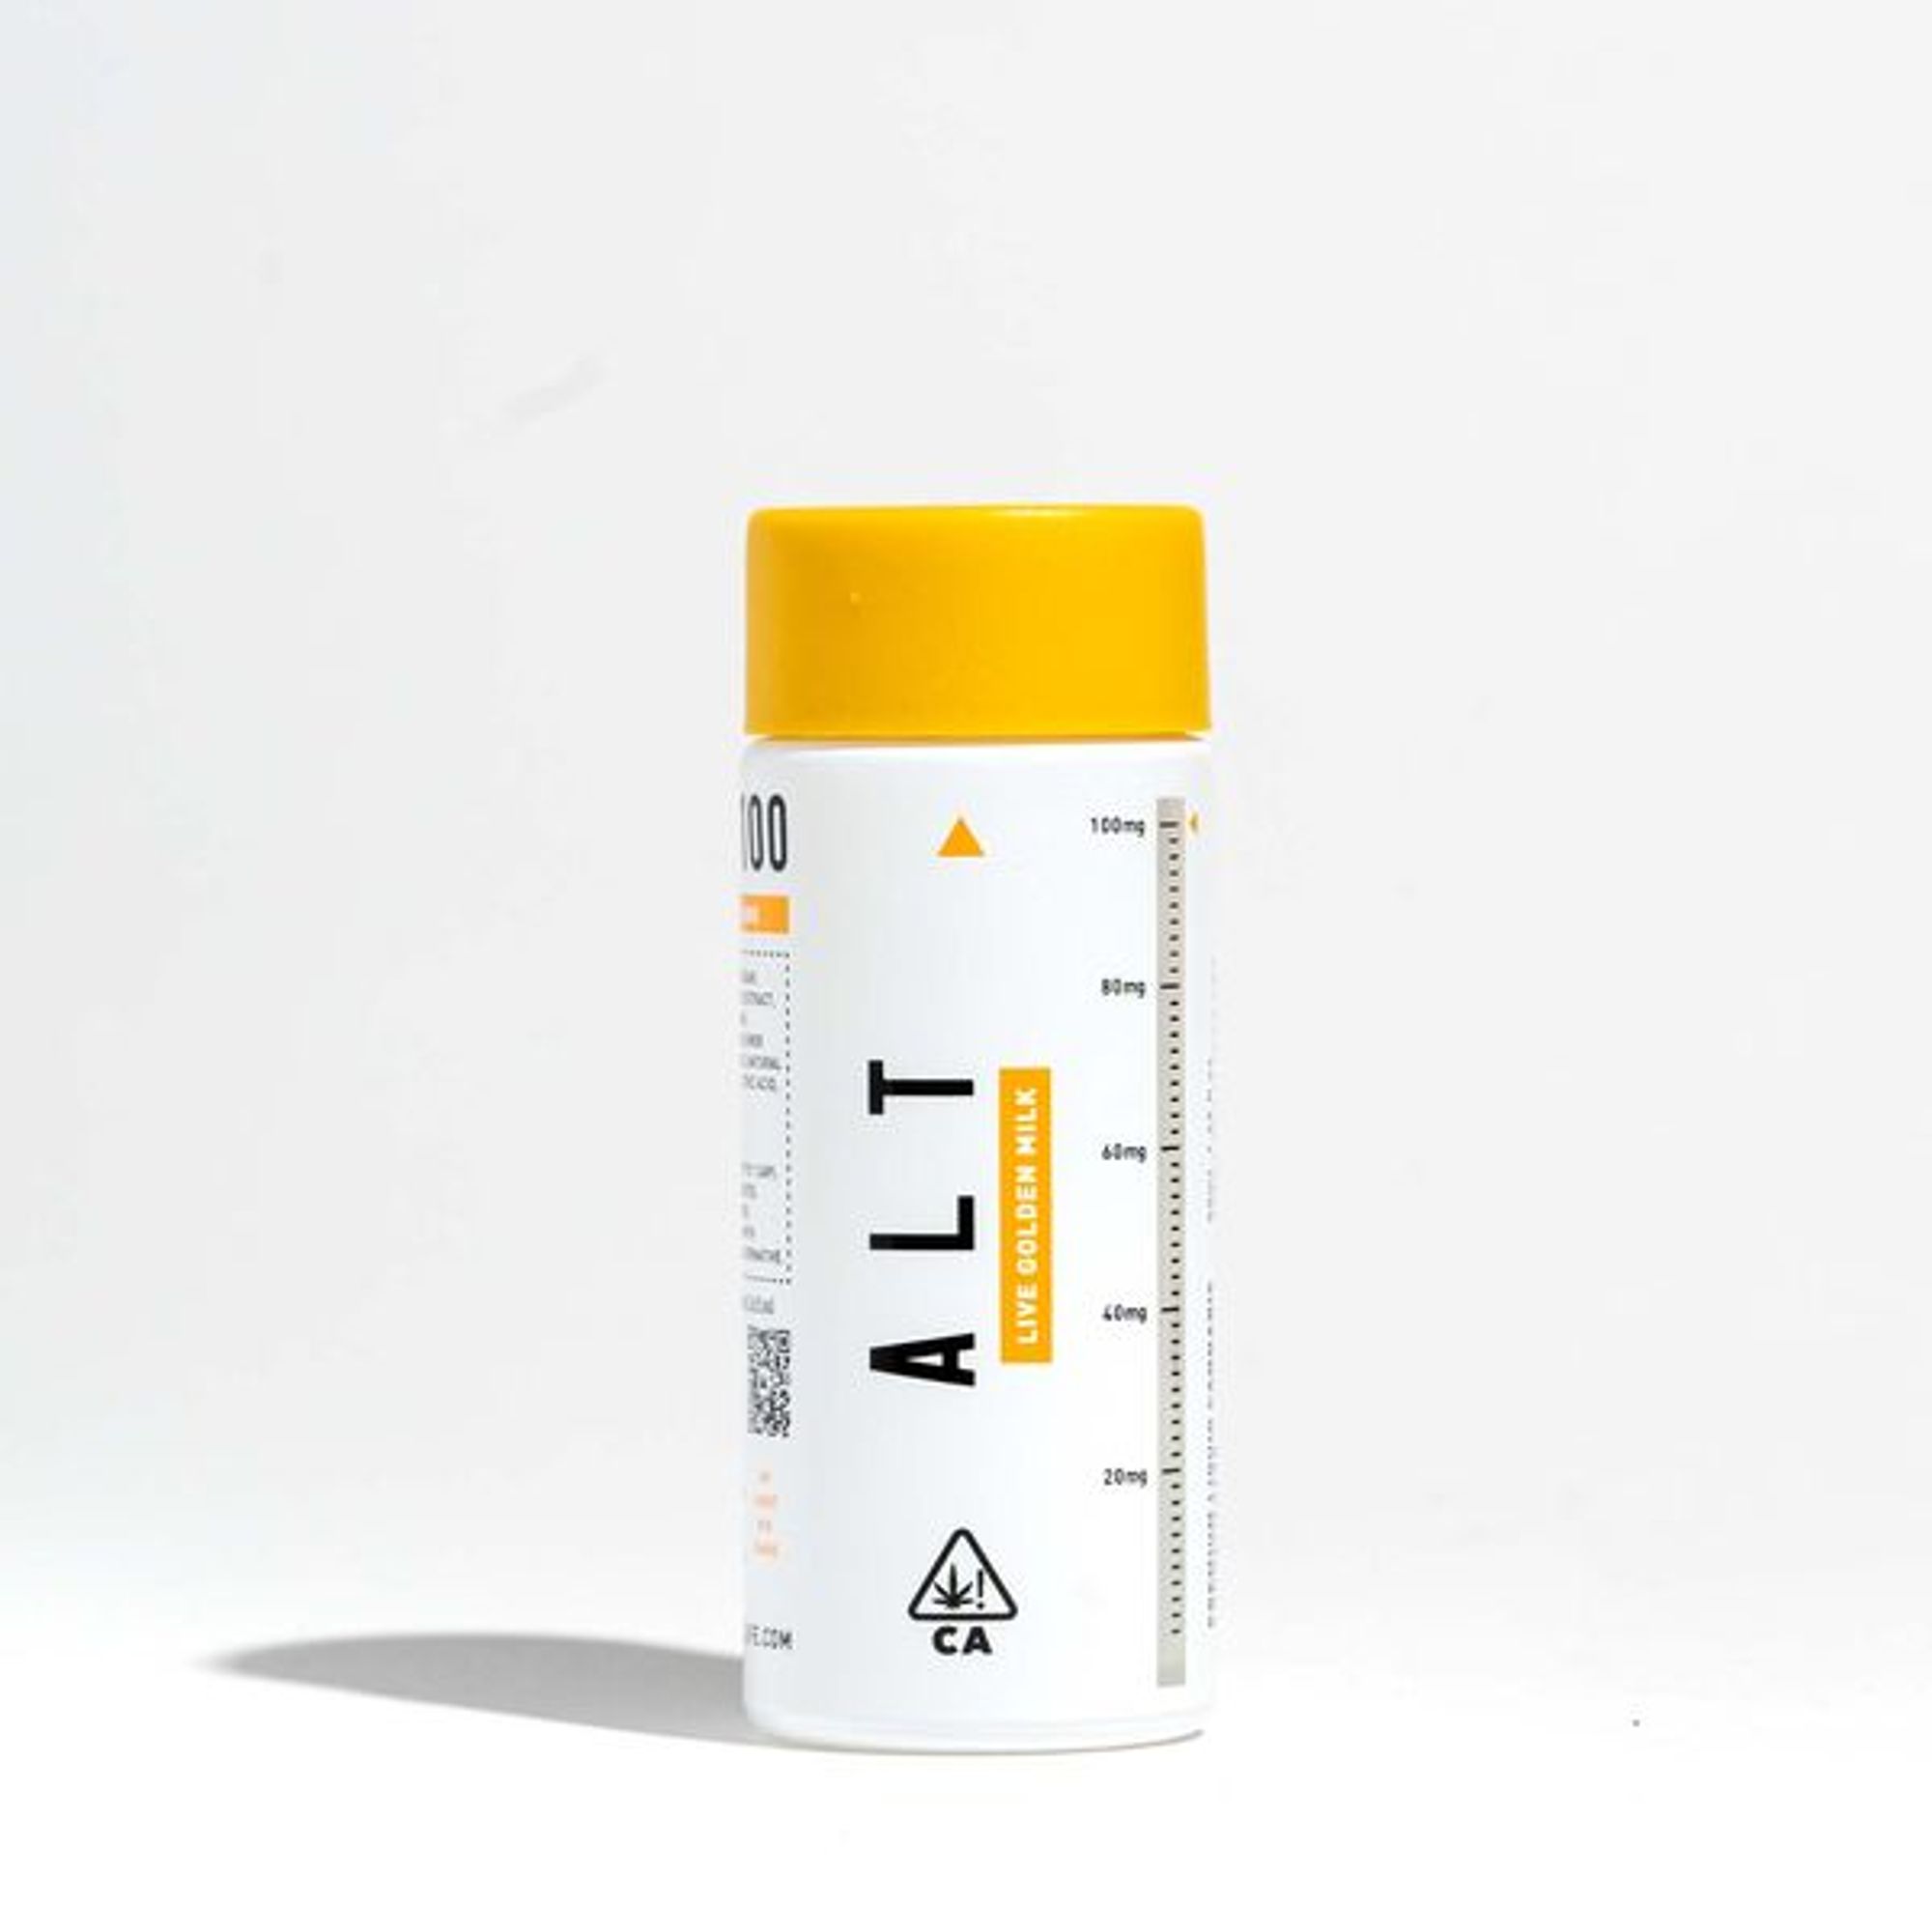 Golden Milk 100mg - Live Resin Beverage Enhancer